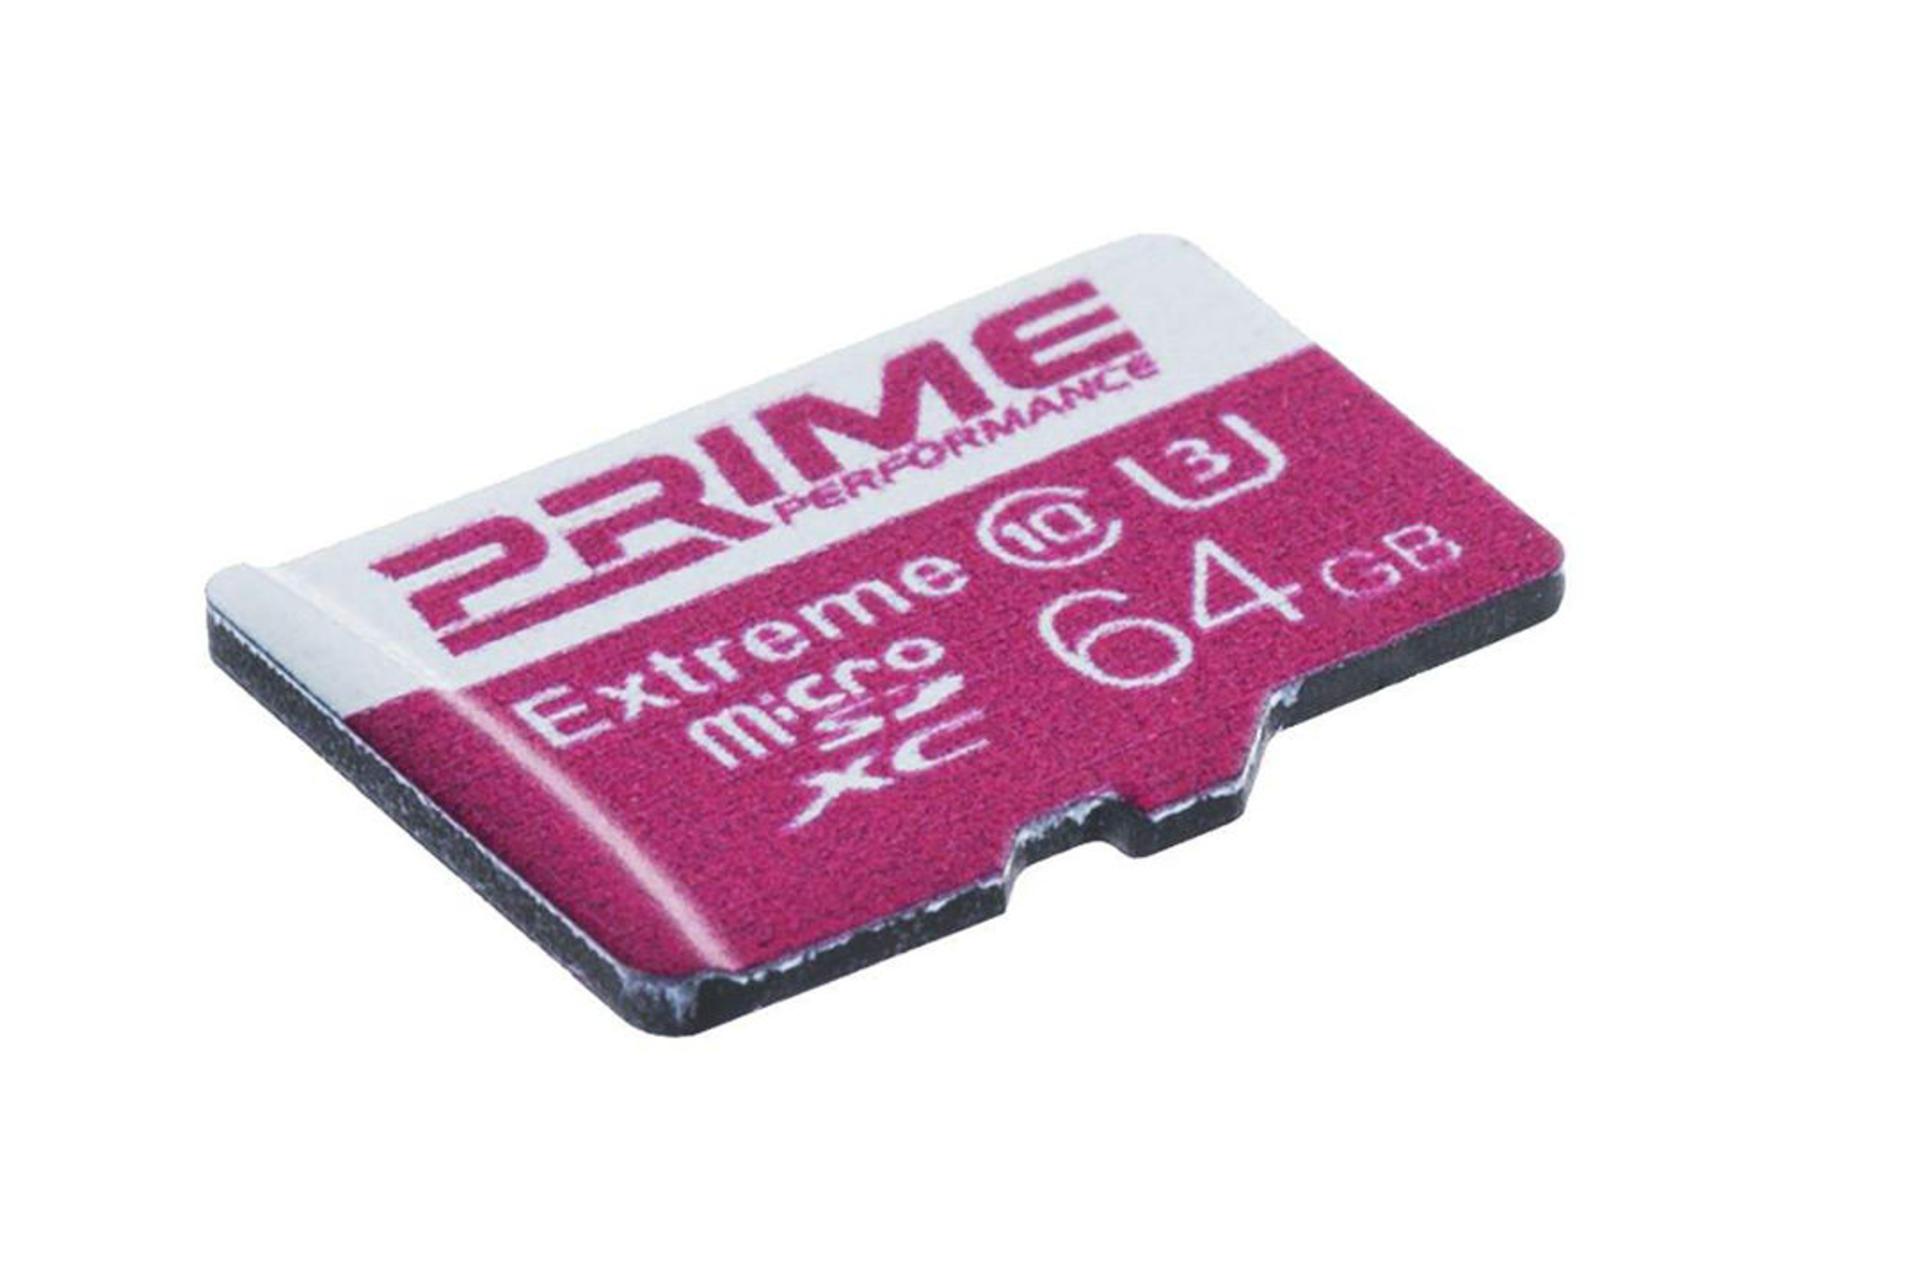 مرجع متخصصين ايران Prime Extreme microSDXC Class 10 UHS-U3 64GB